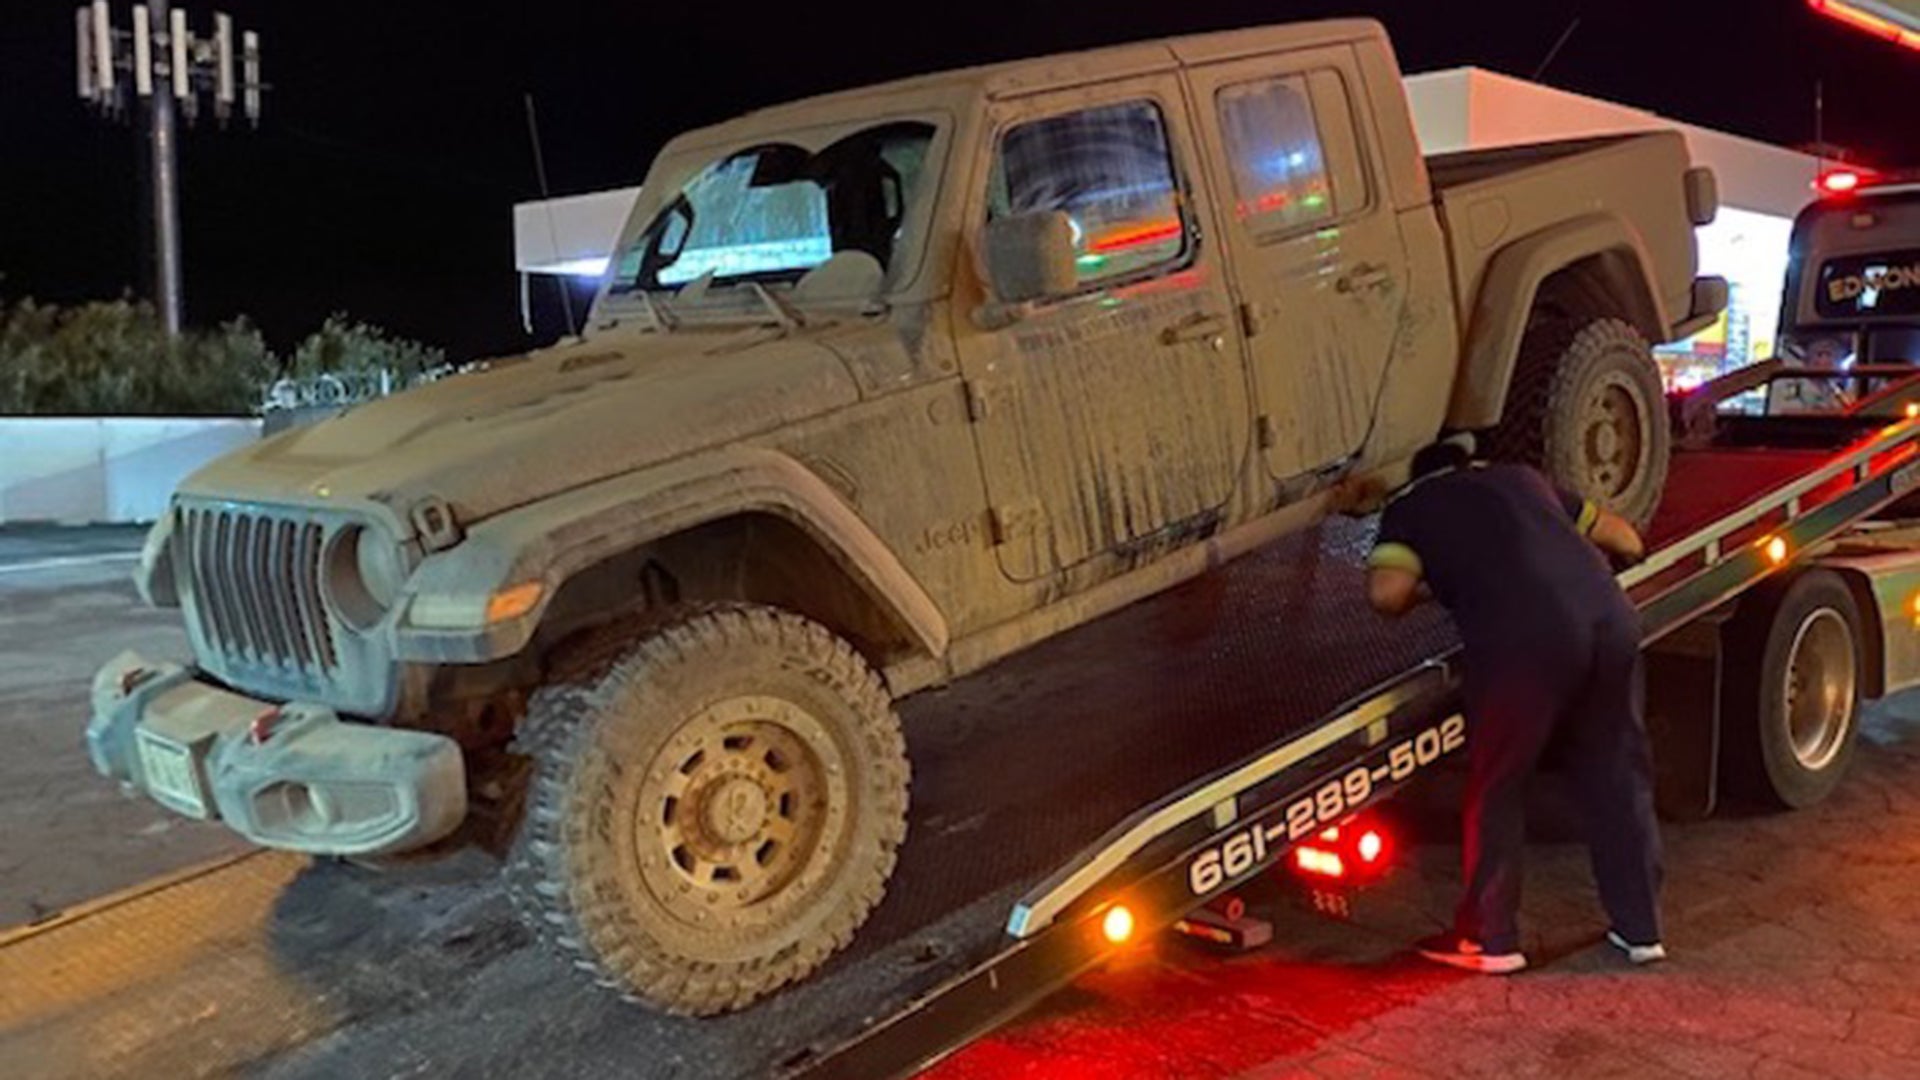 Гарантия на сломанный Jeep Gladiator 2020 года аннулируется после проезда по грязи